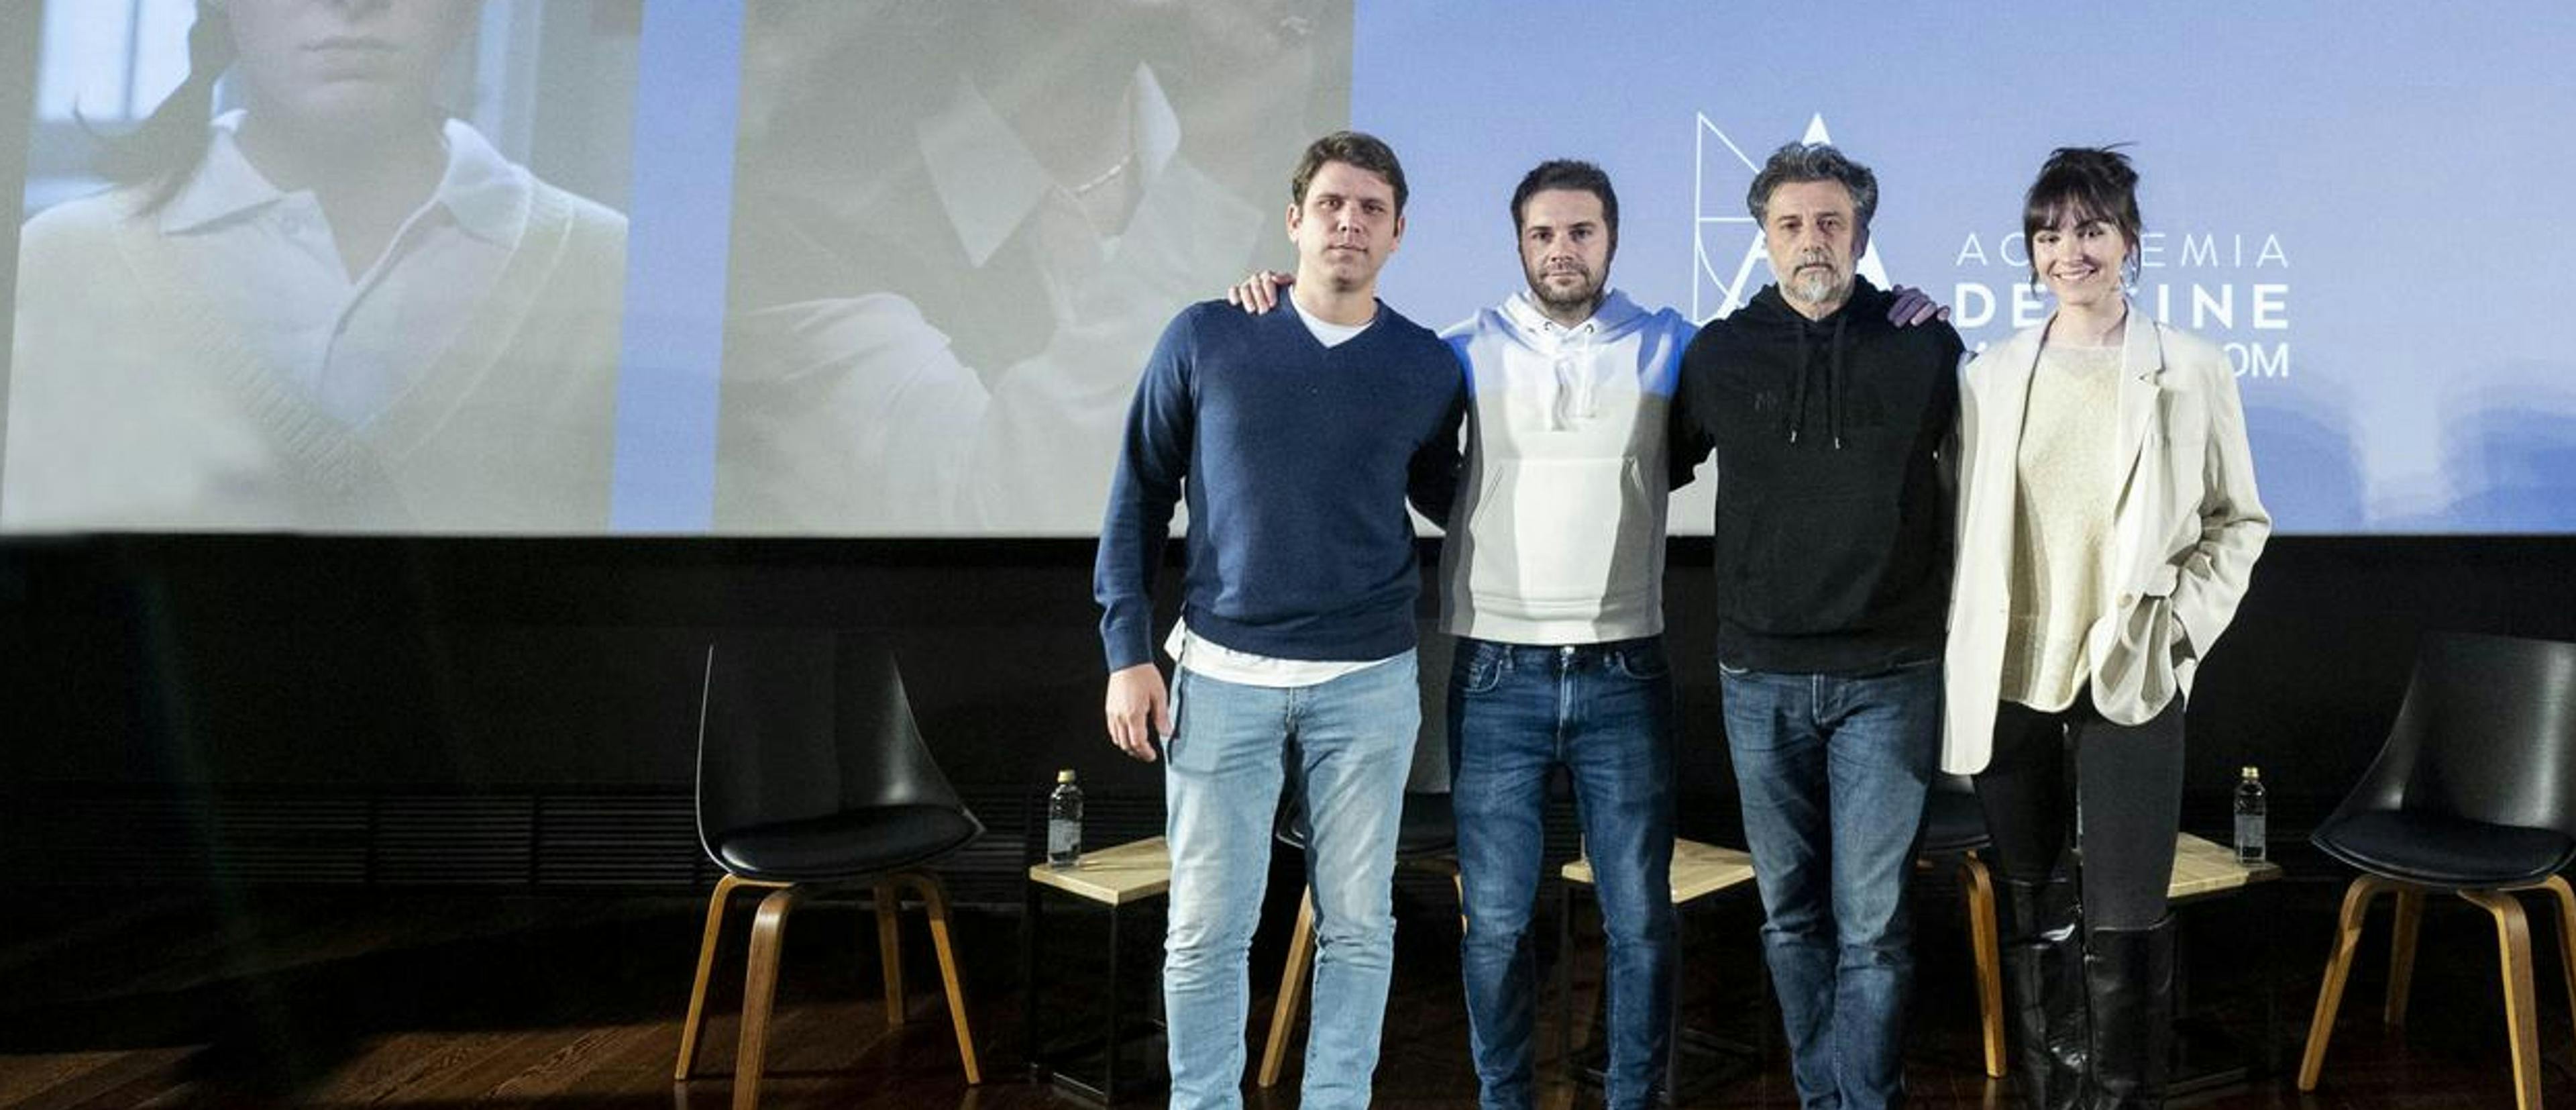 La Academia reunió a los cuatro cortometrajistas españoles que aspiraban al Oscar